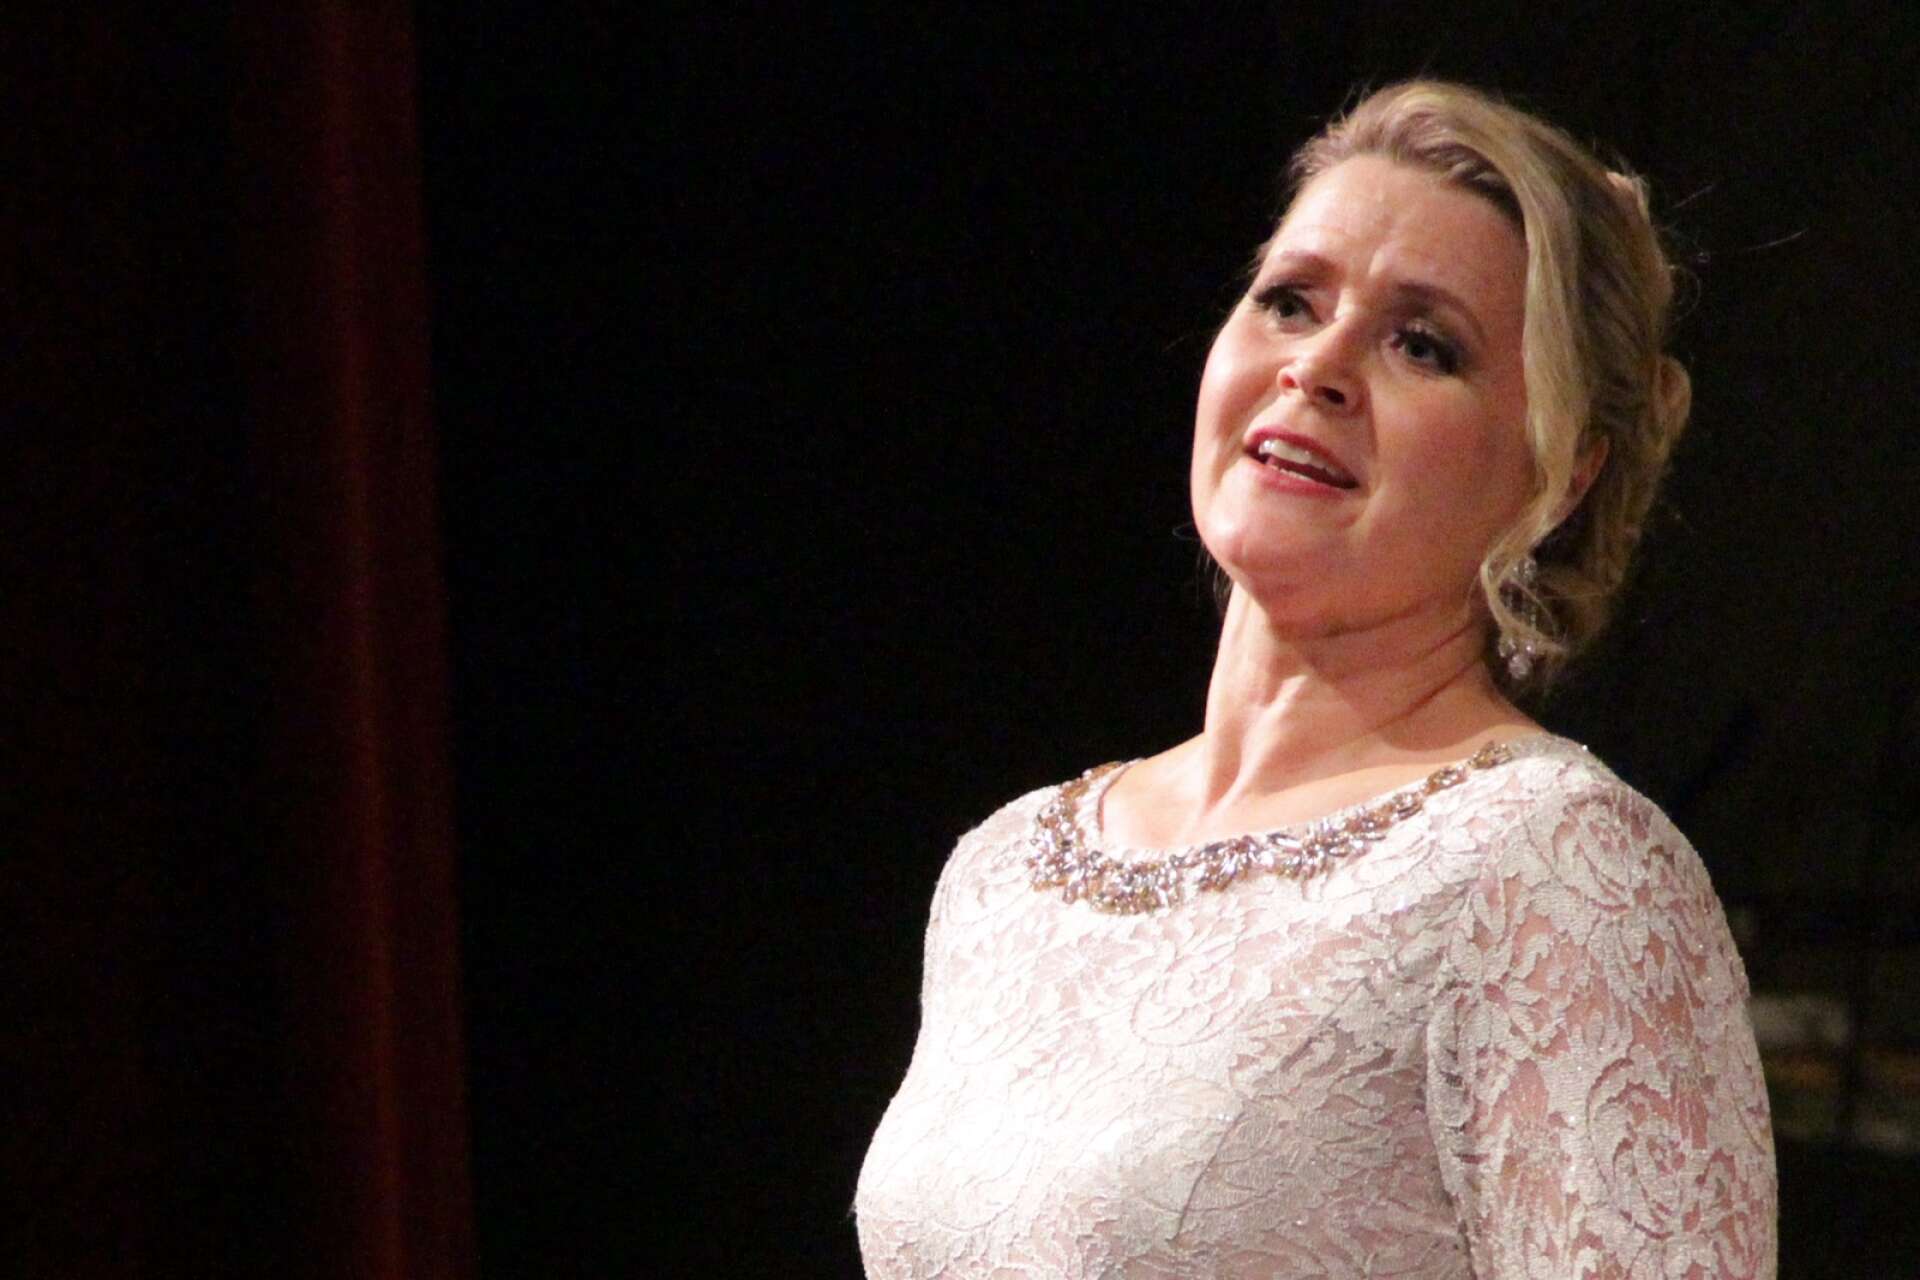 AnnLouice Lögdlund ska sjunga titelrollen när Wermland opera sätter upp Aida. Den manliga huvudrollen, tenorrollen Radamés, sjungs av Ole Aleksander Bang. Övriga roller är ännu inte besatta.